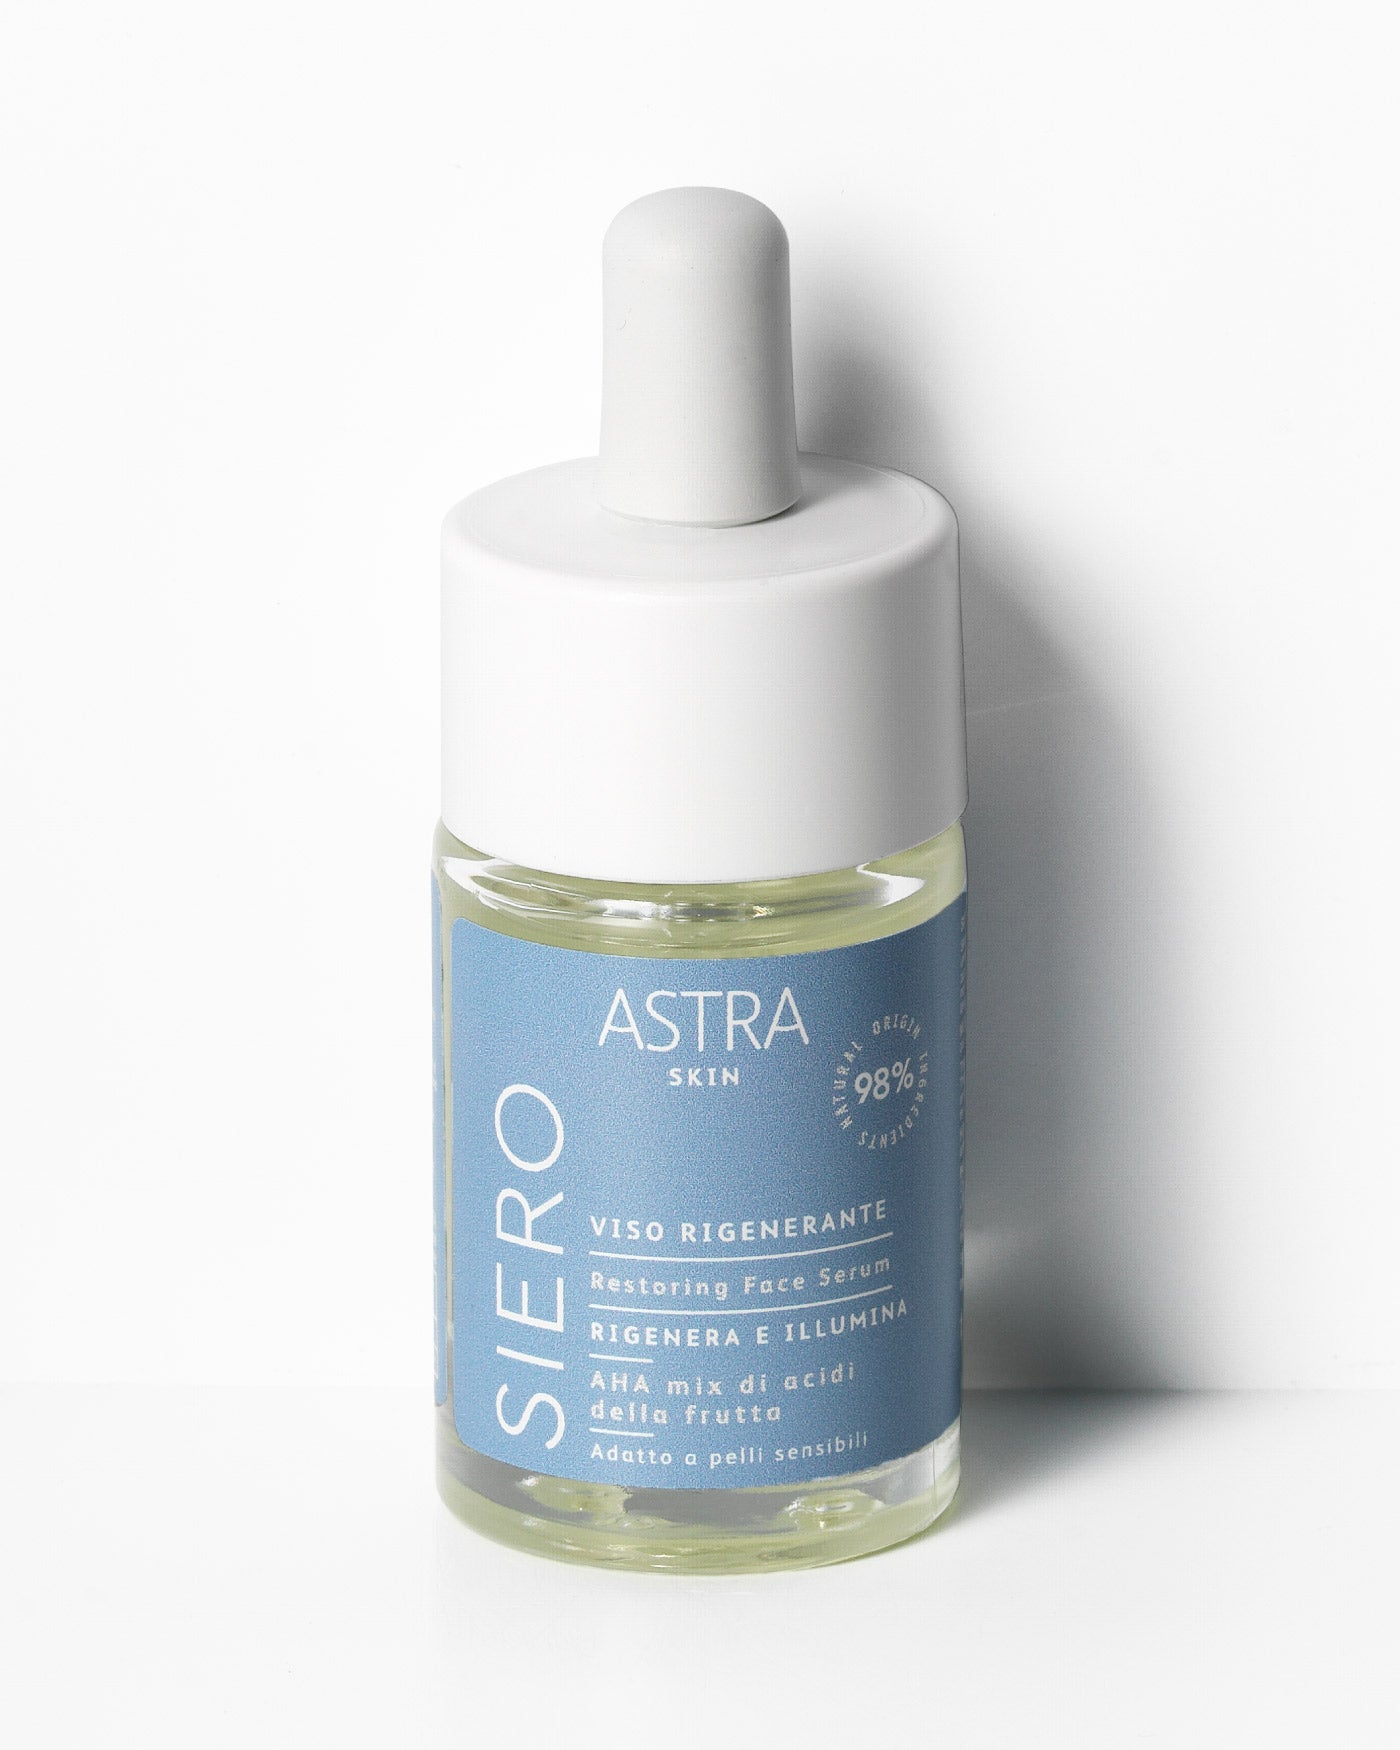 SIERO VISO RIGENERANTE - Set Skin - Pelle Oleosa - Astra Make-Up